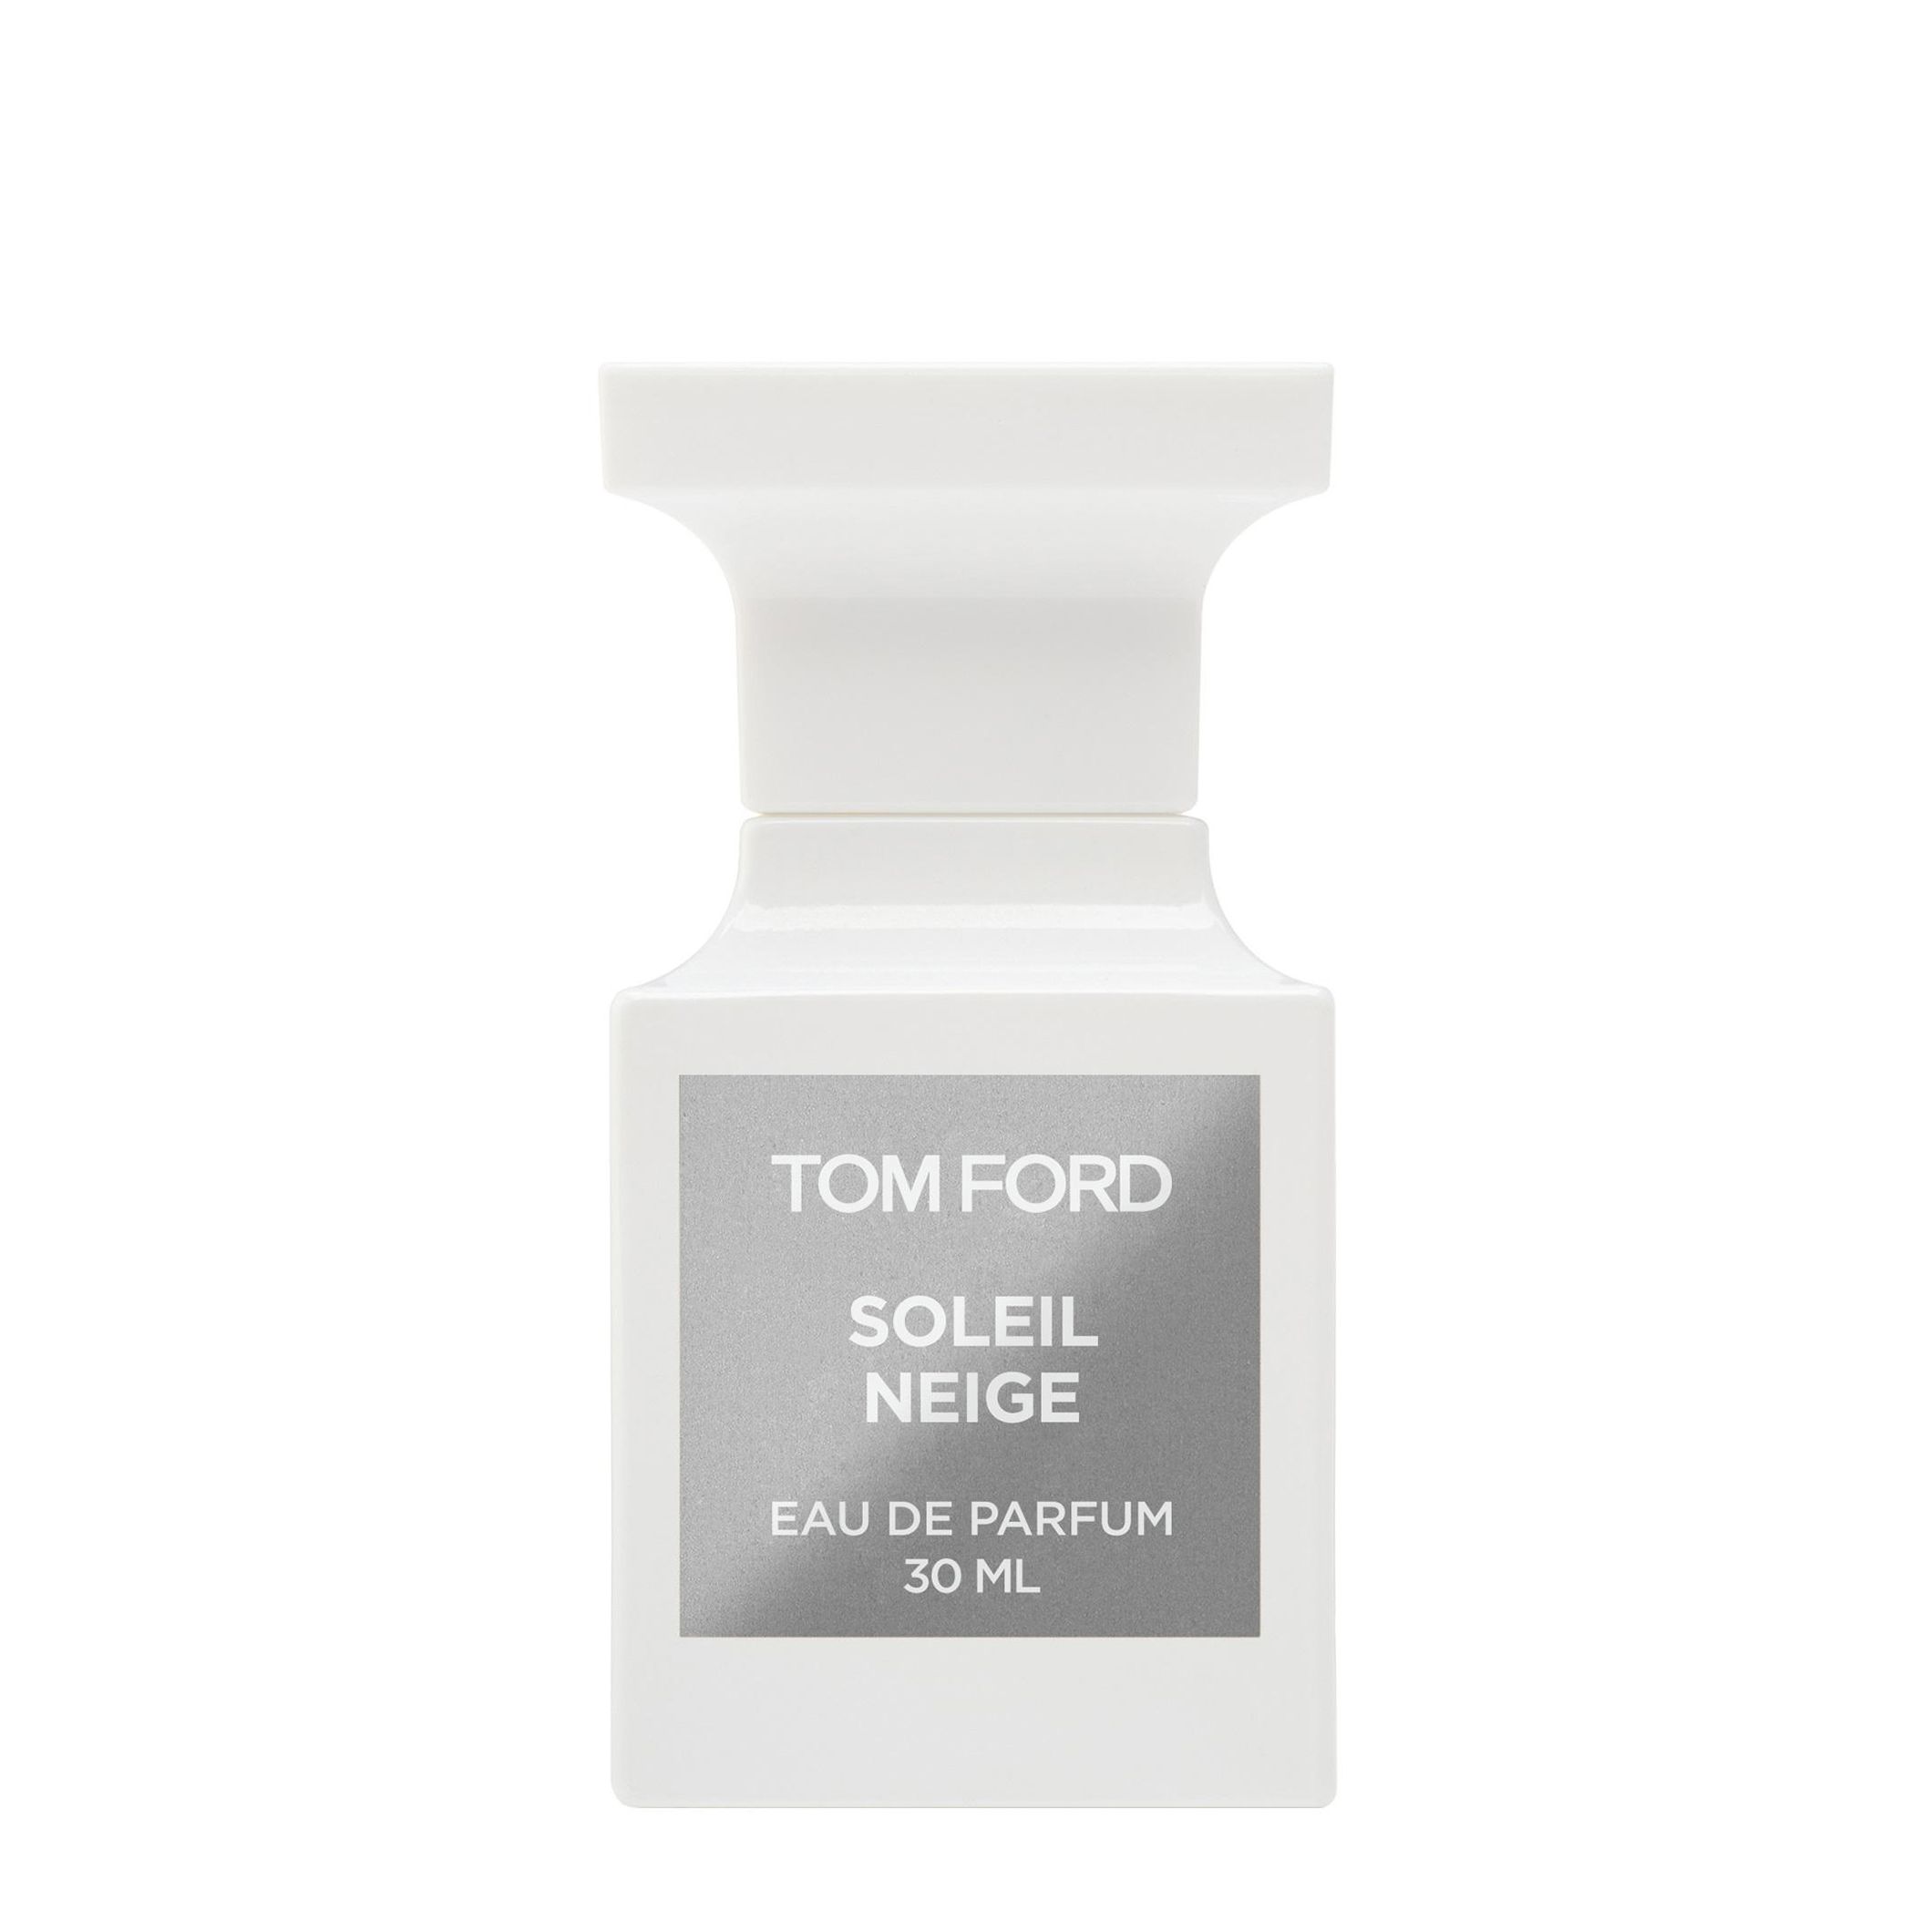 Вода парфюмерная Tom Ford Soleil Neige, унисекс, 30 мл